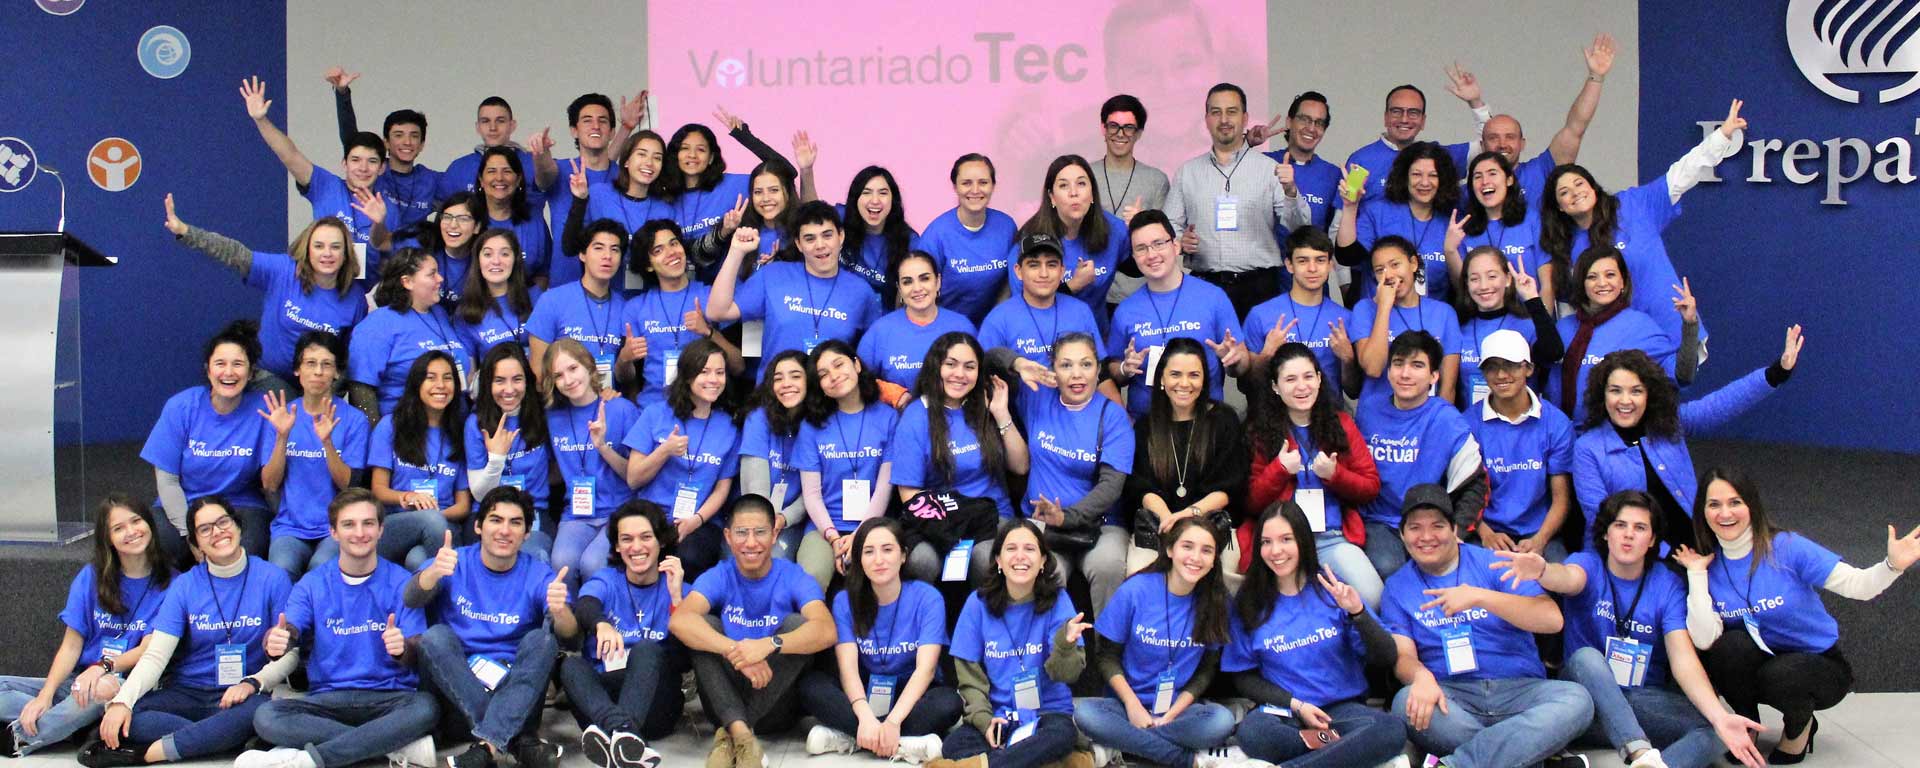 Comunidad Tec de la PrepaTec Campus Eugenio Garza Sada participando en el Voluntariado Tec 